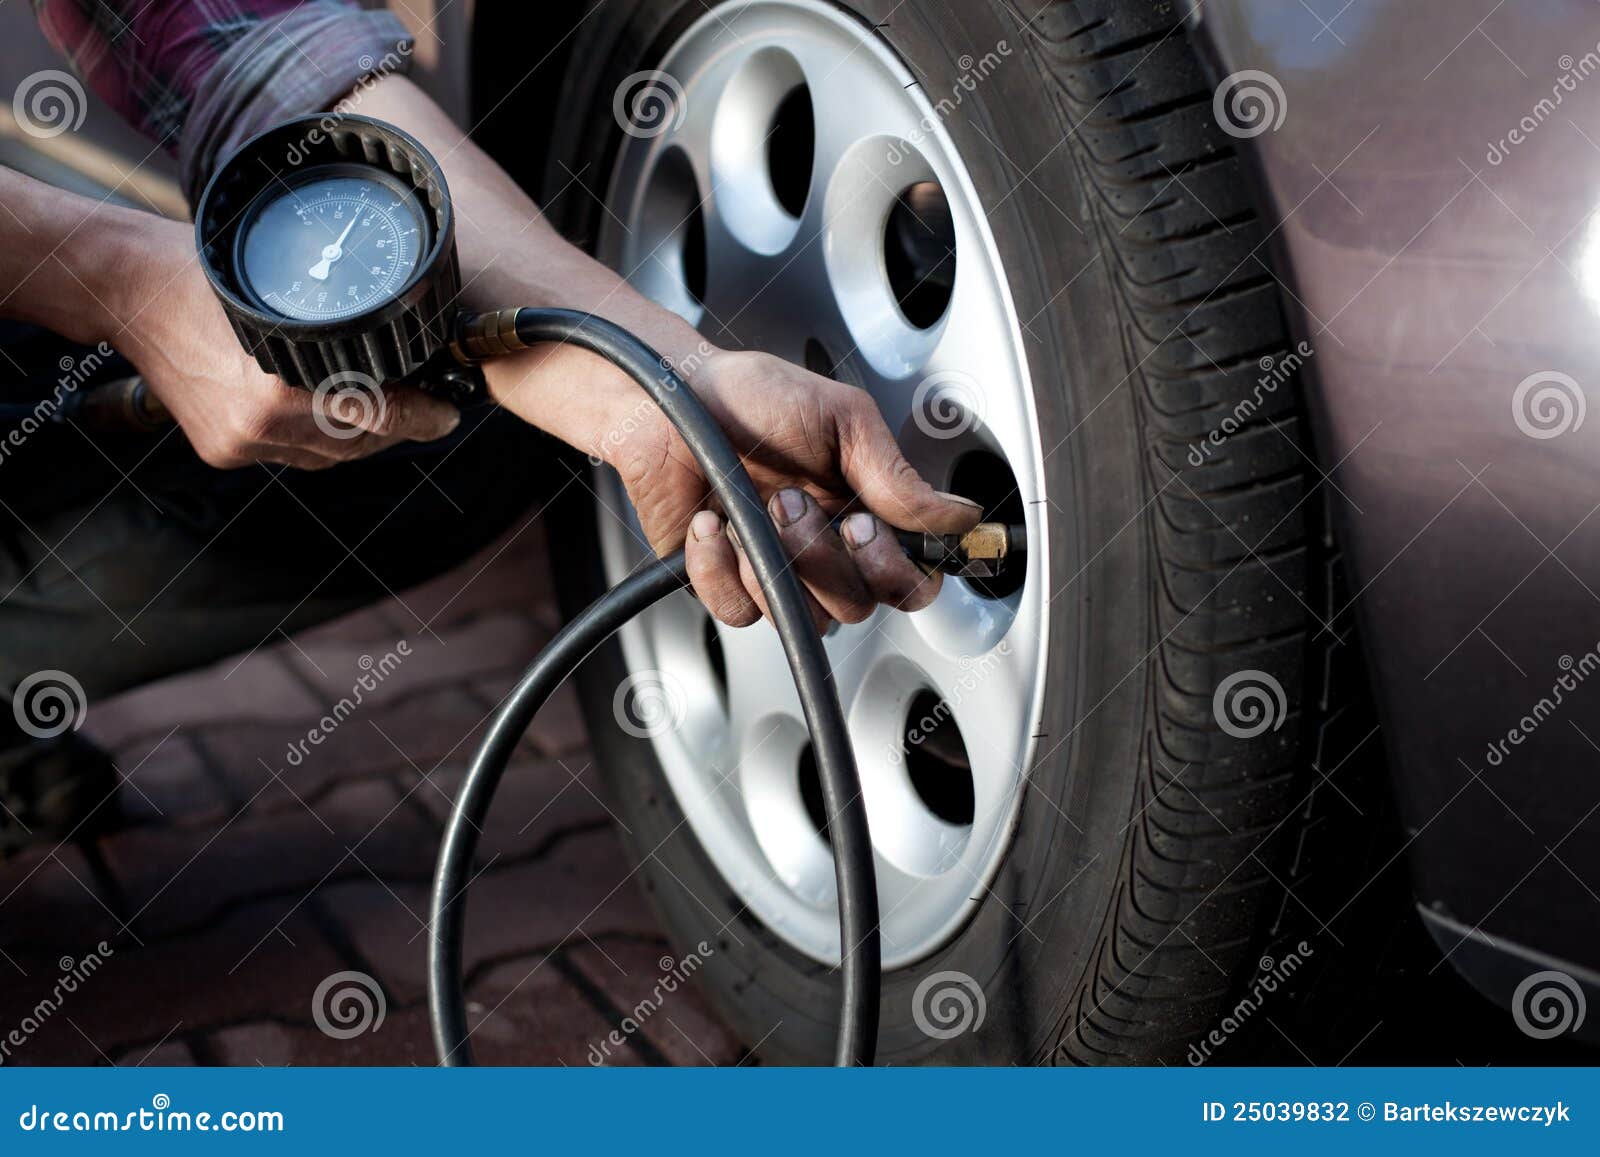 tire pressure check